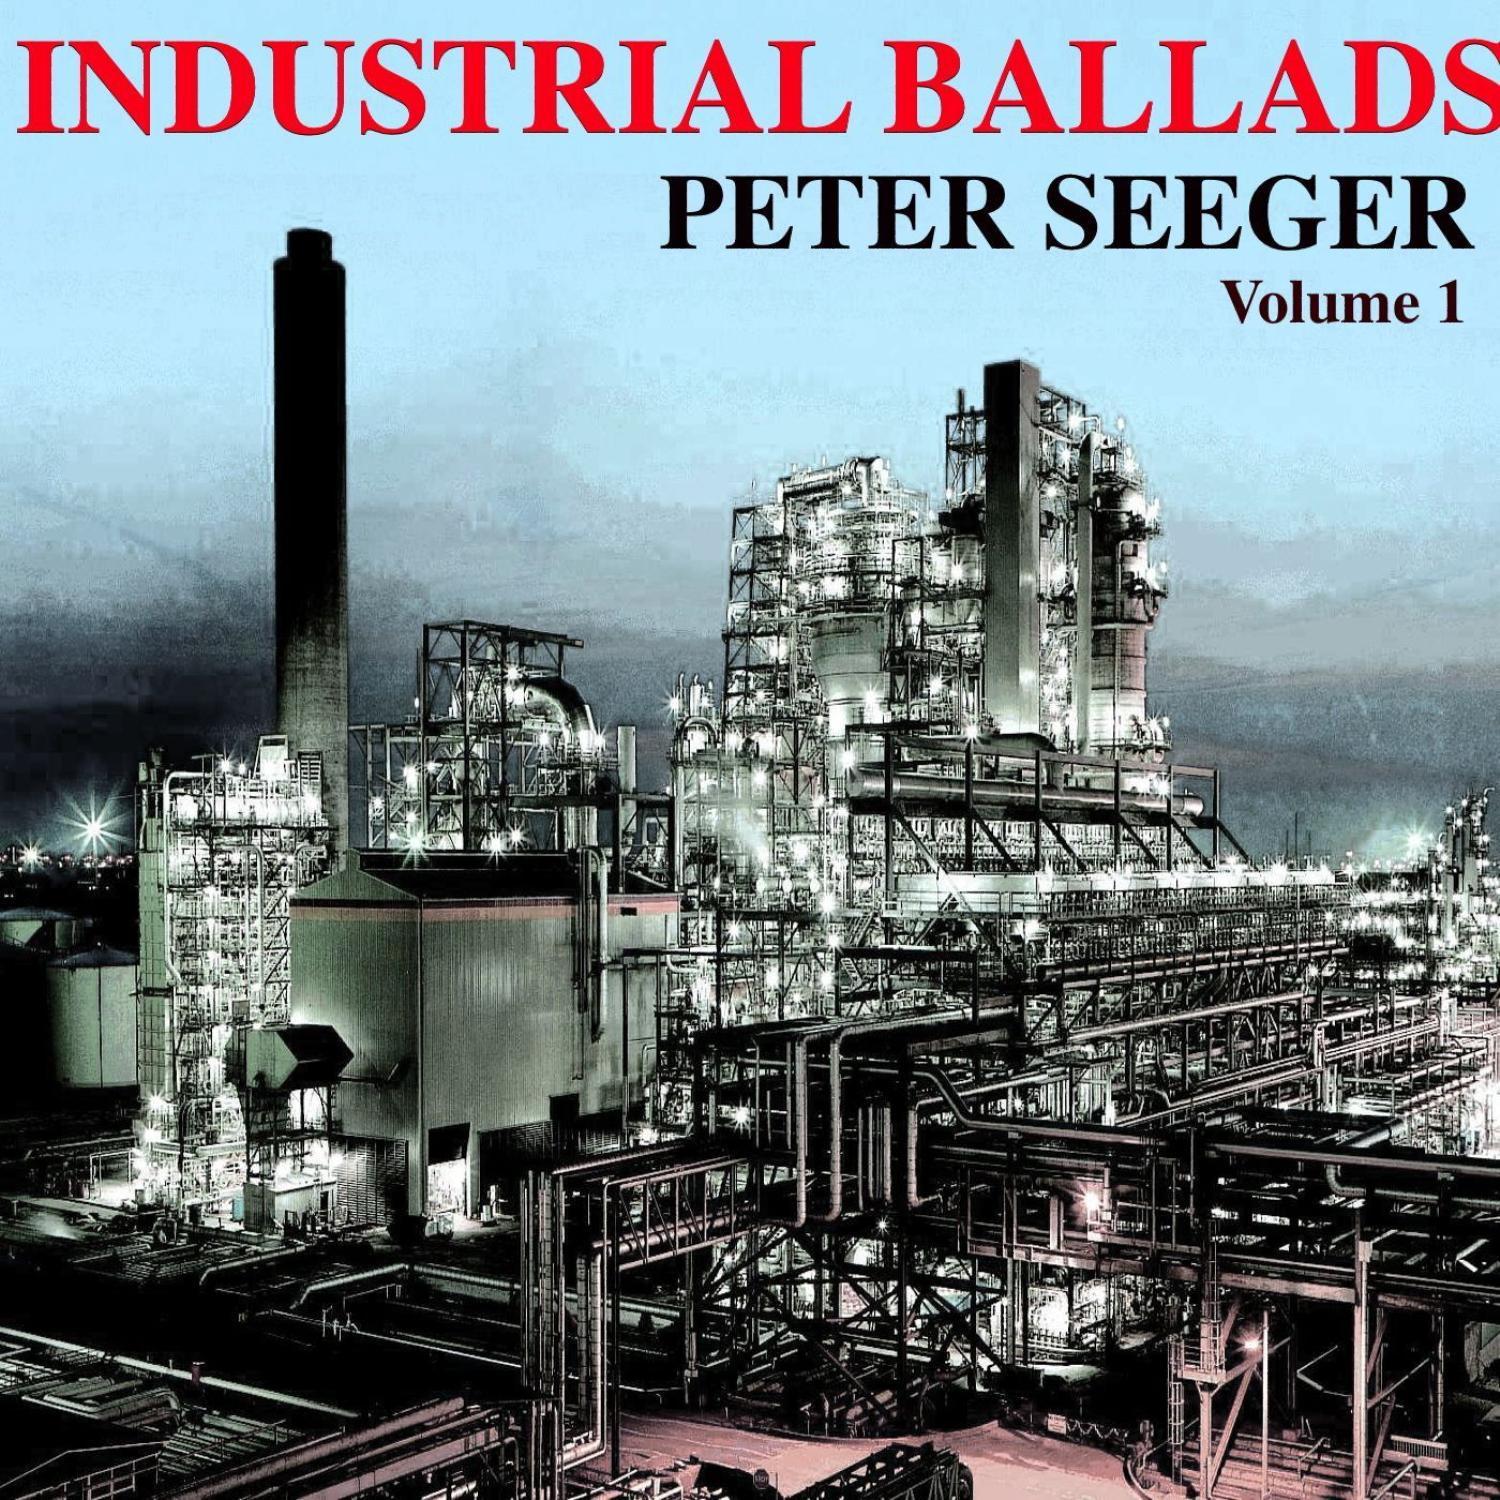 Industrial Ballads Volume 1